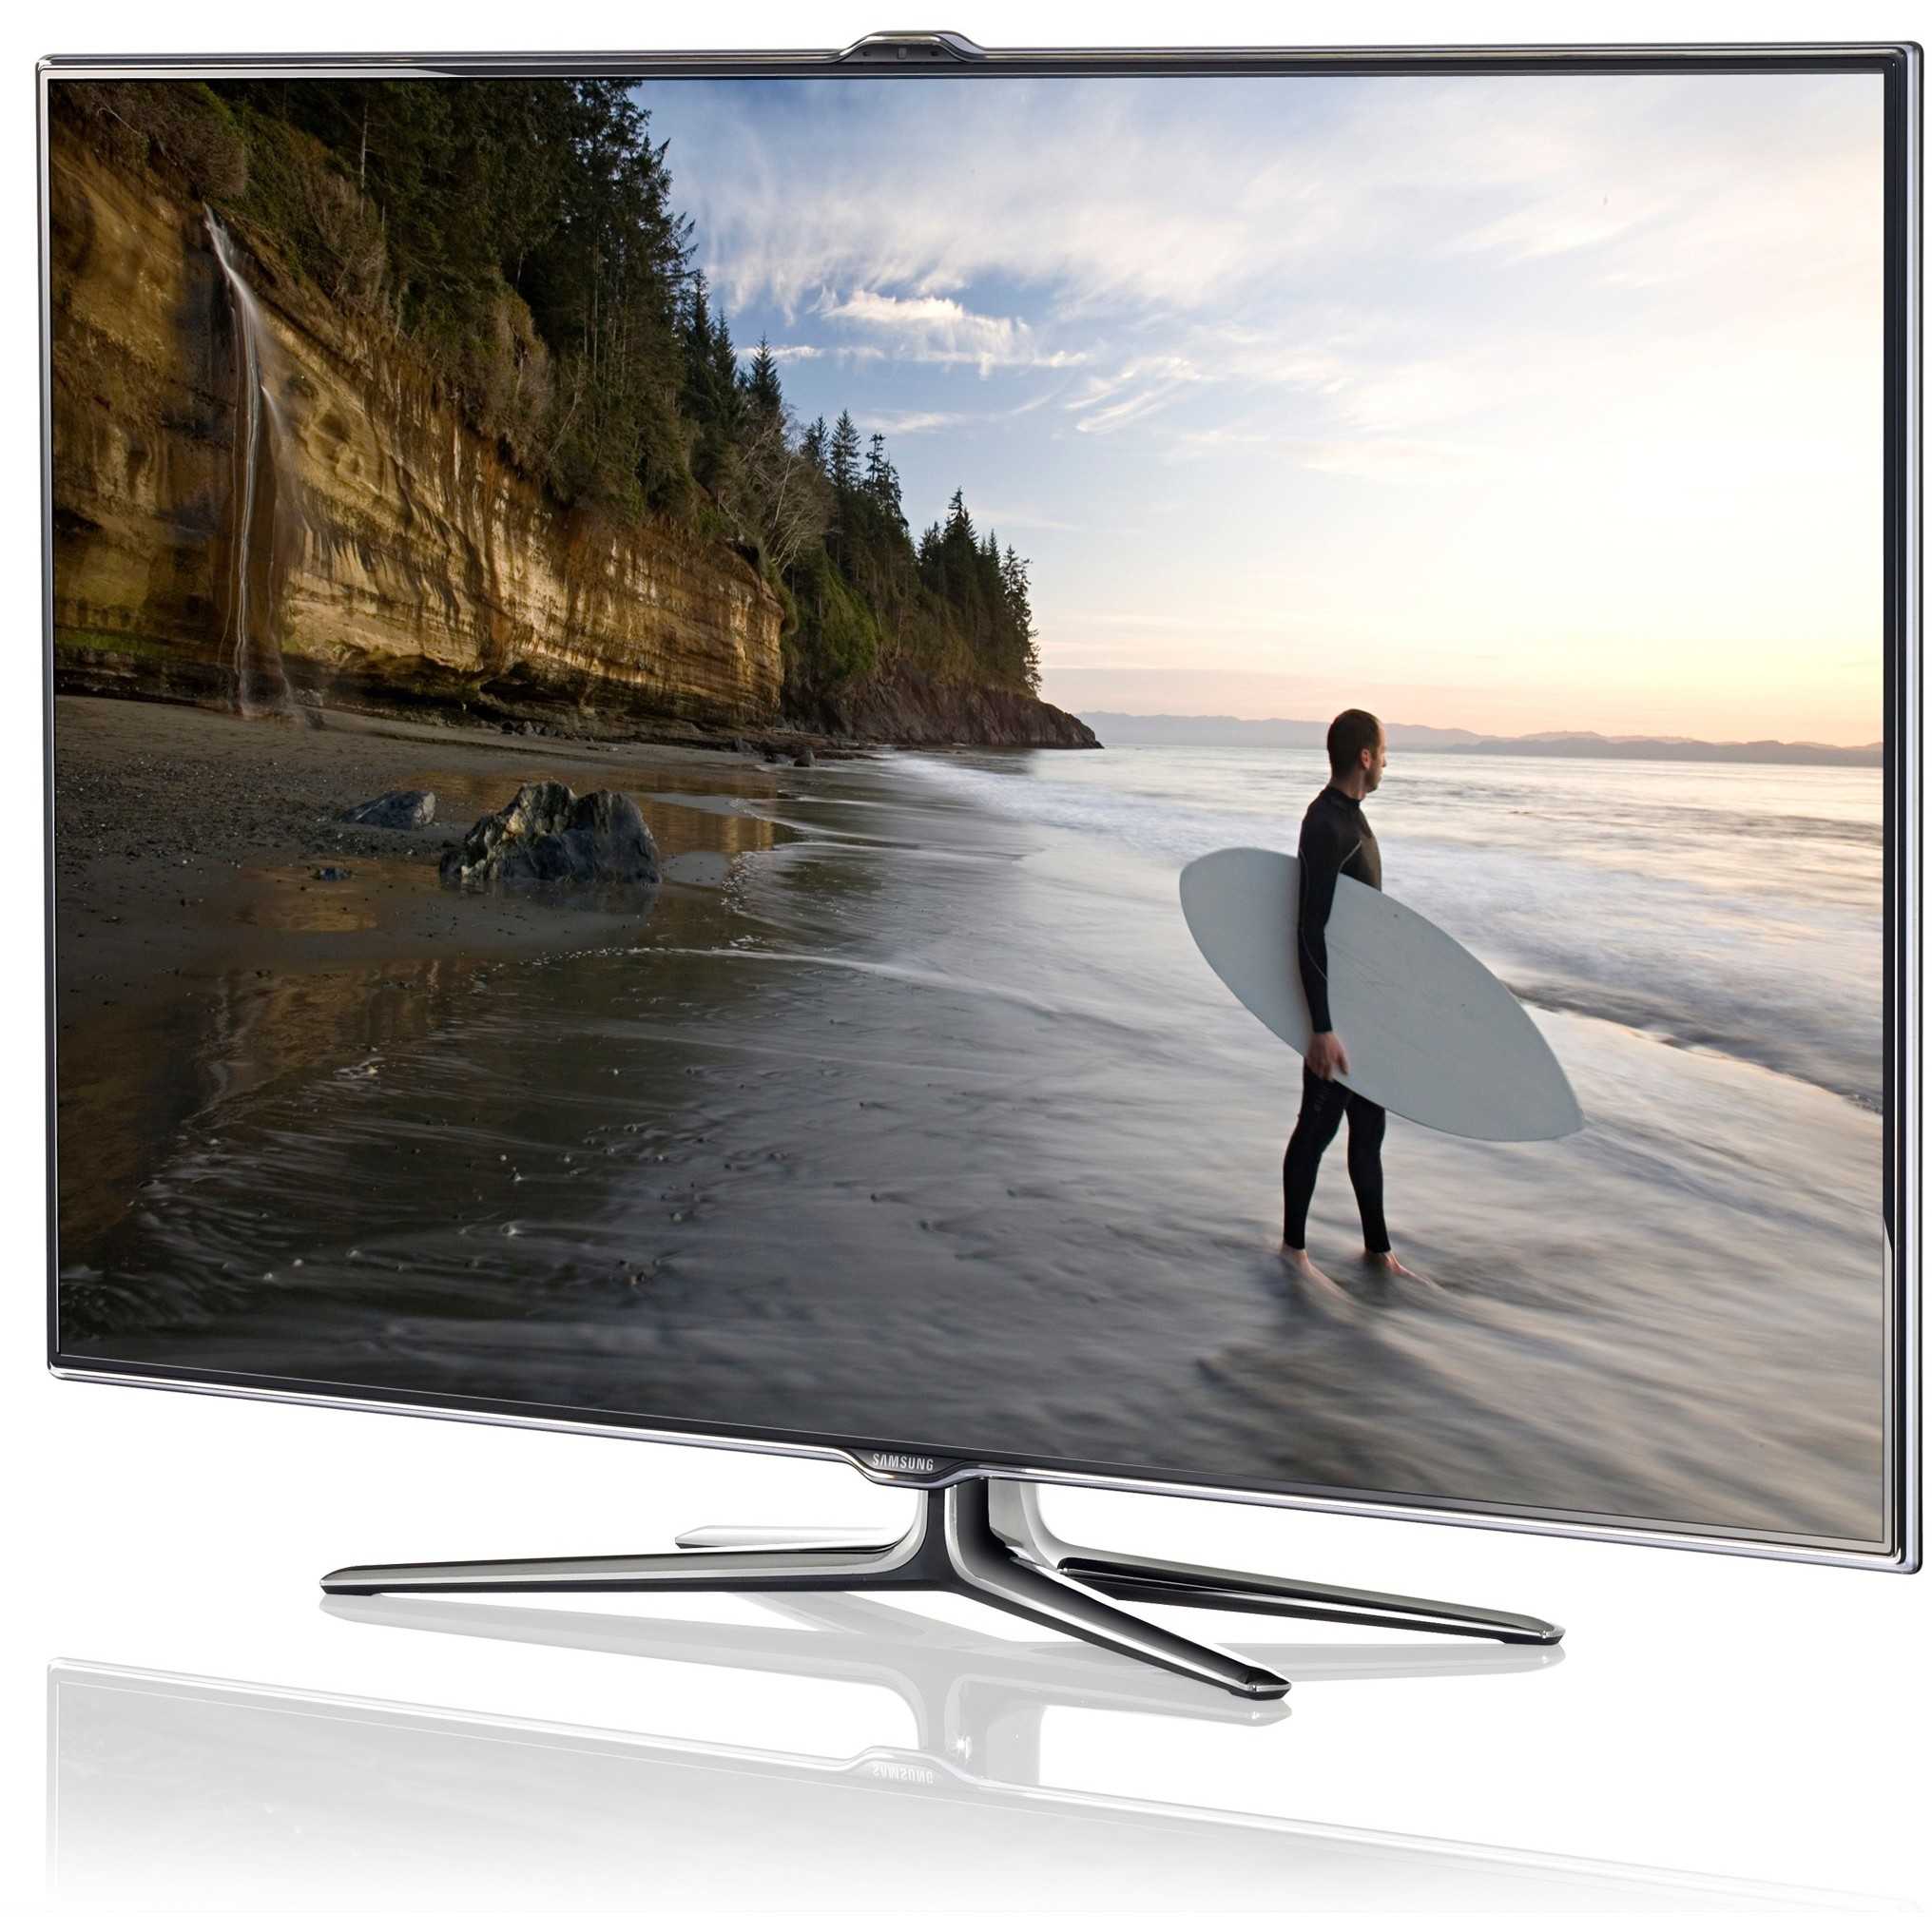 Samsung ue40es5557 - купить , скидки, цена, отзывы, обзор, характеристики - телевизоры